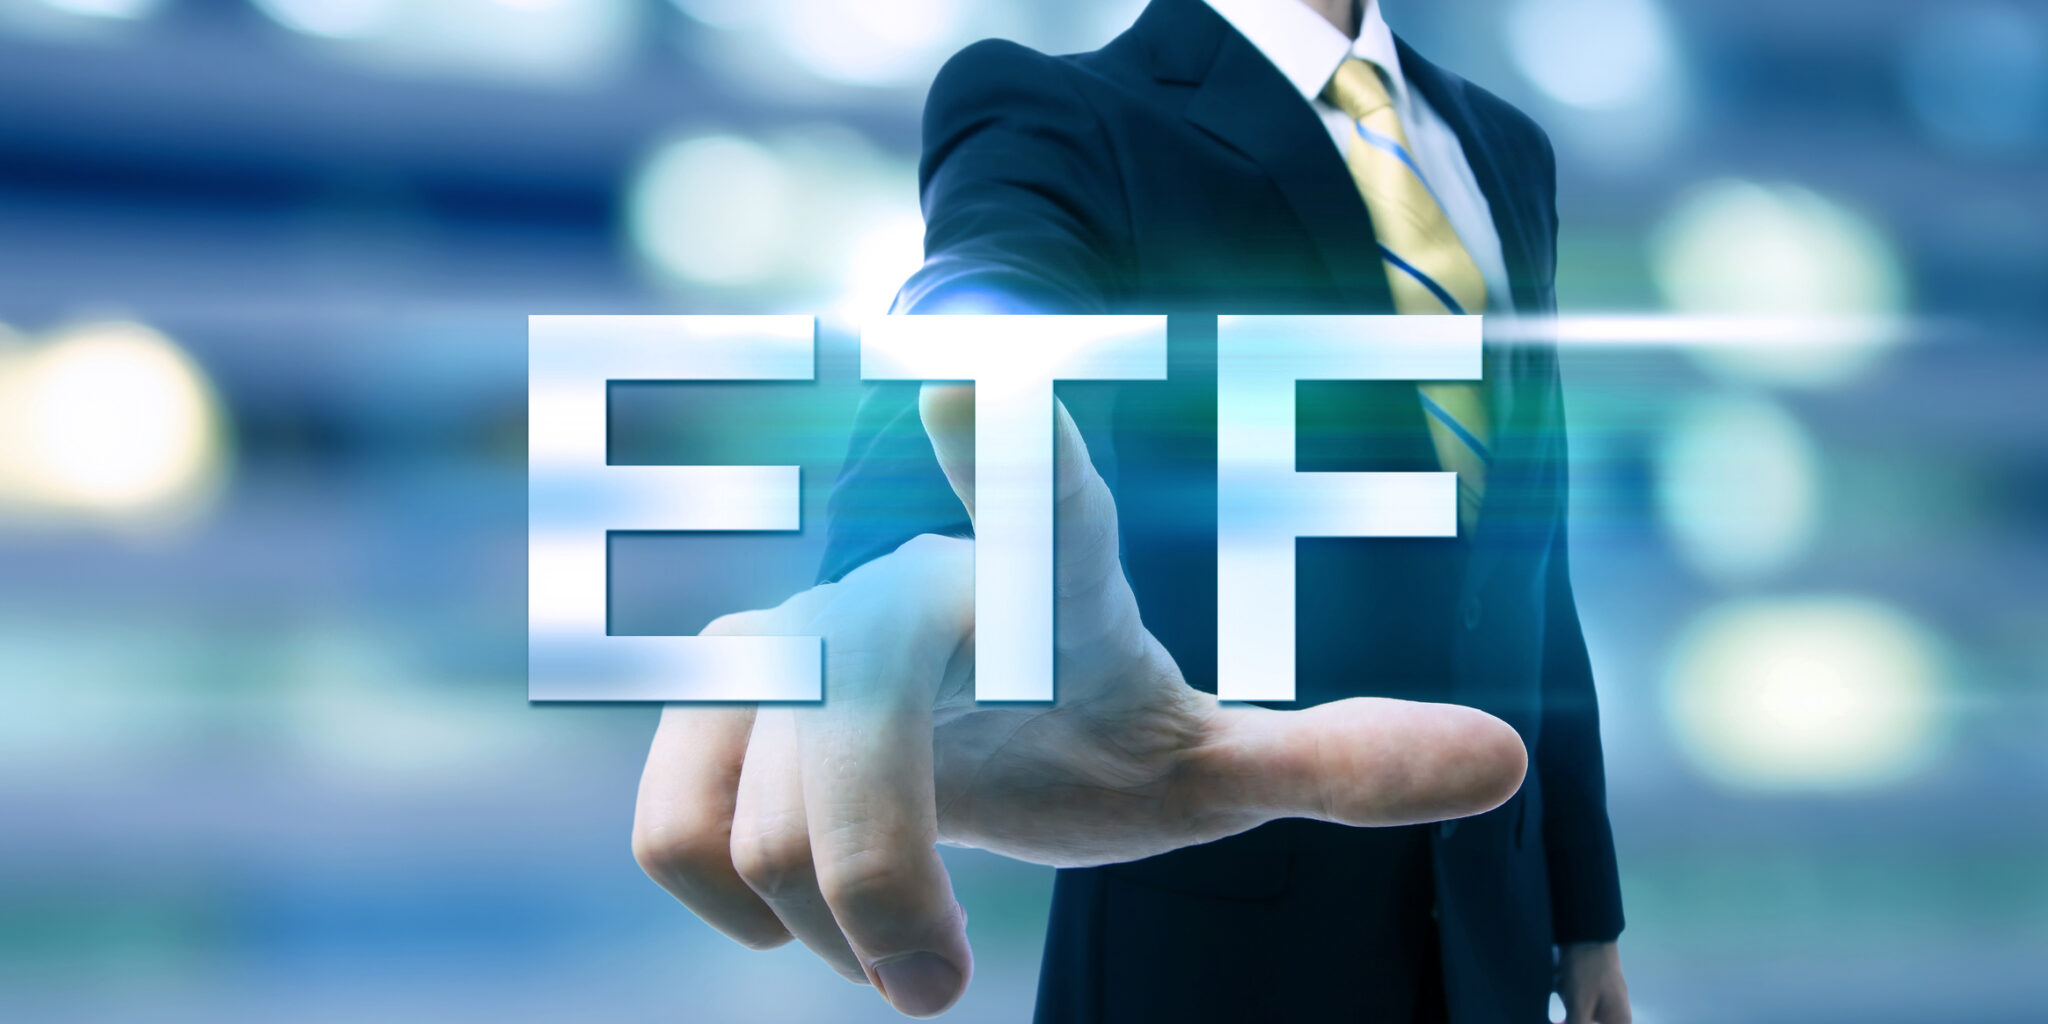 Fundos de Investimento vs. ETF: quais as diferenças?